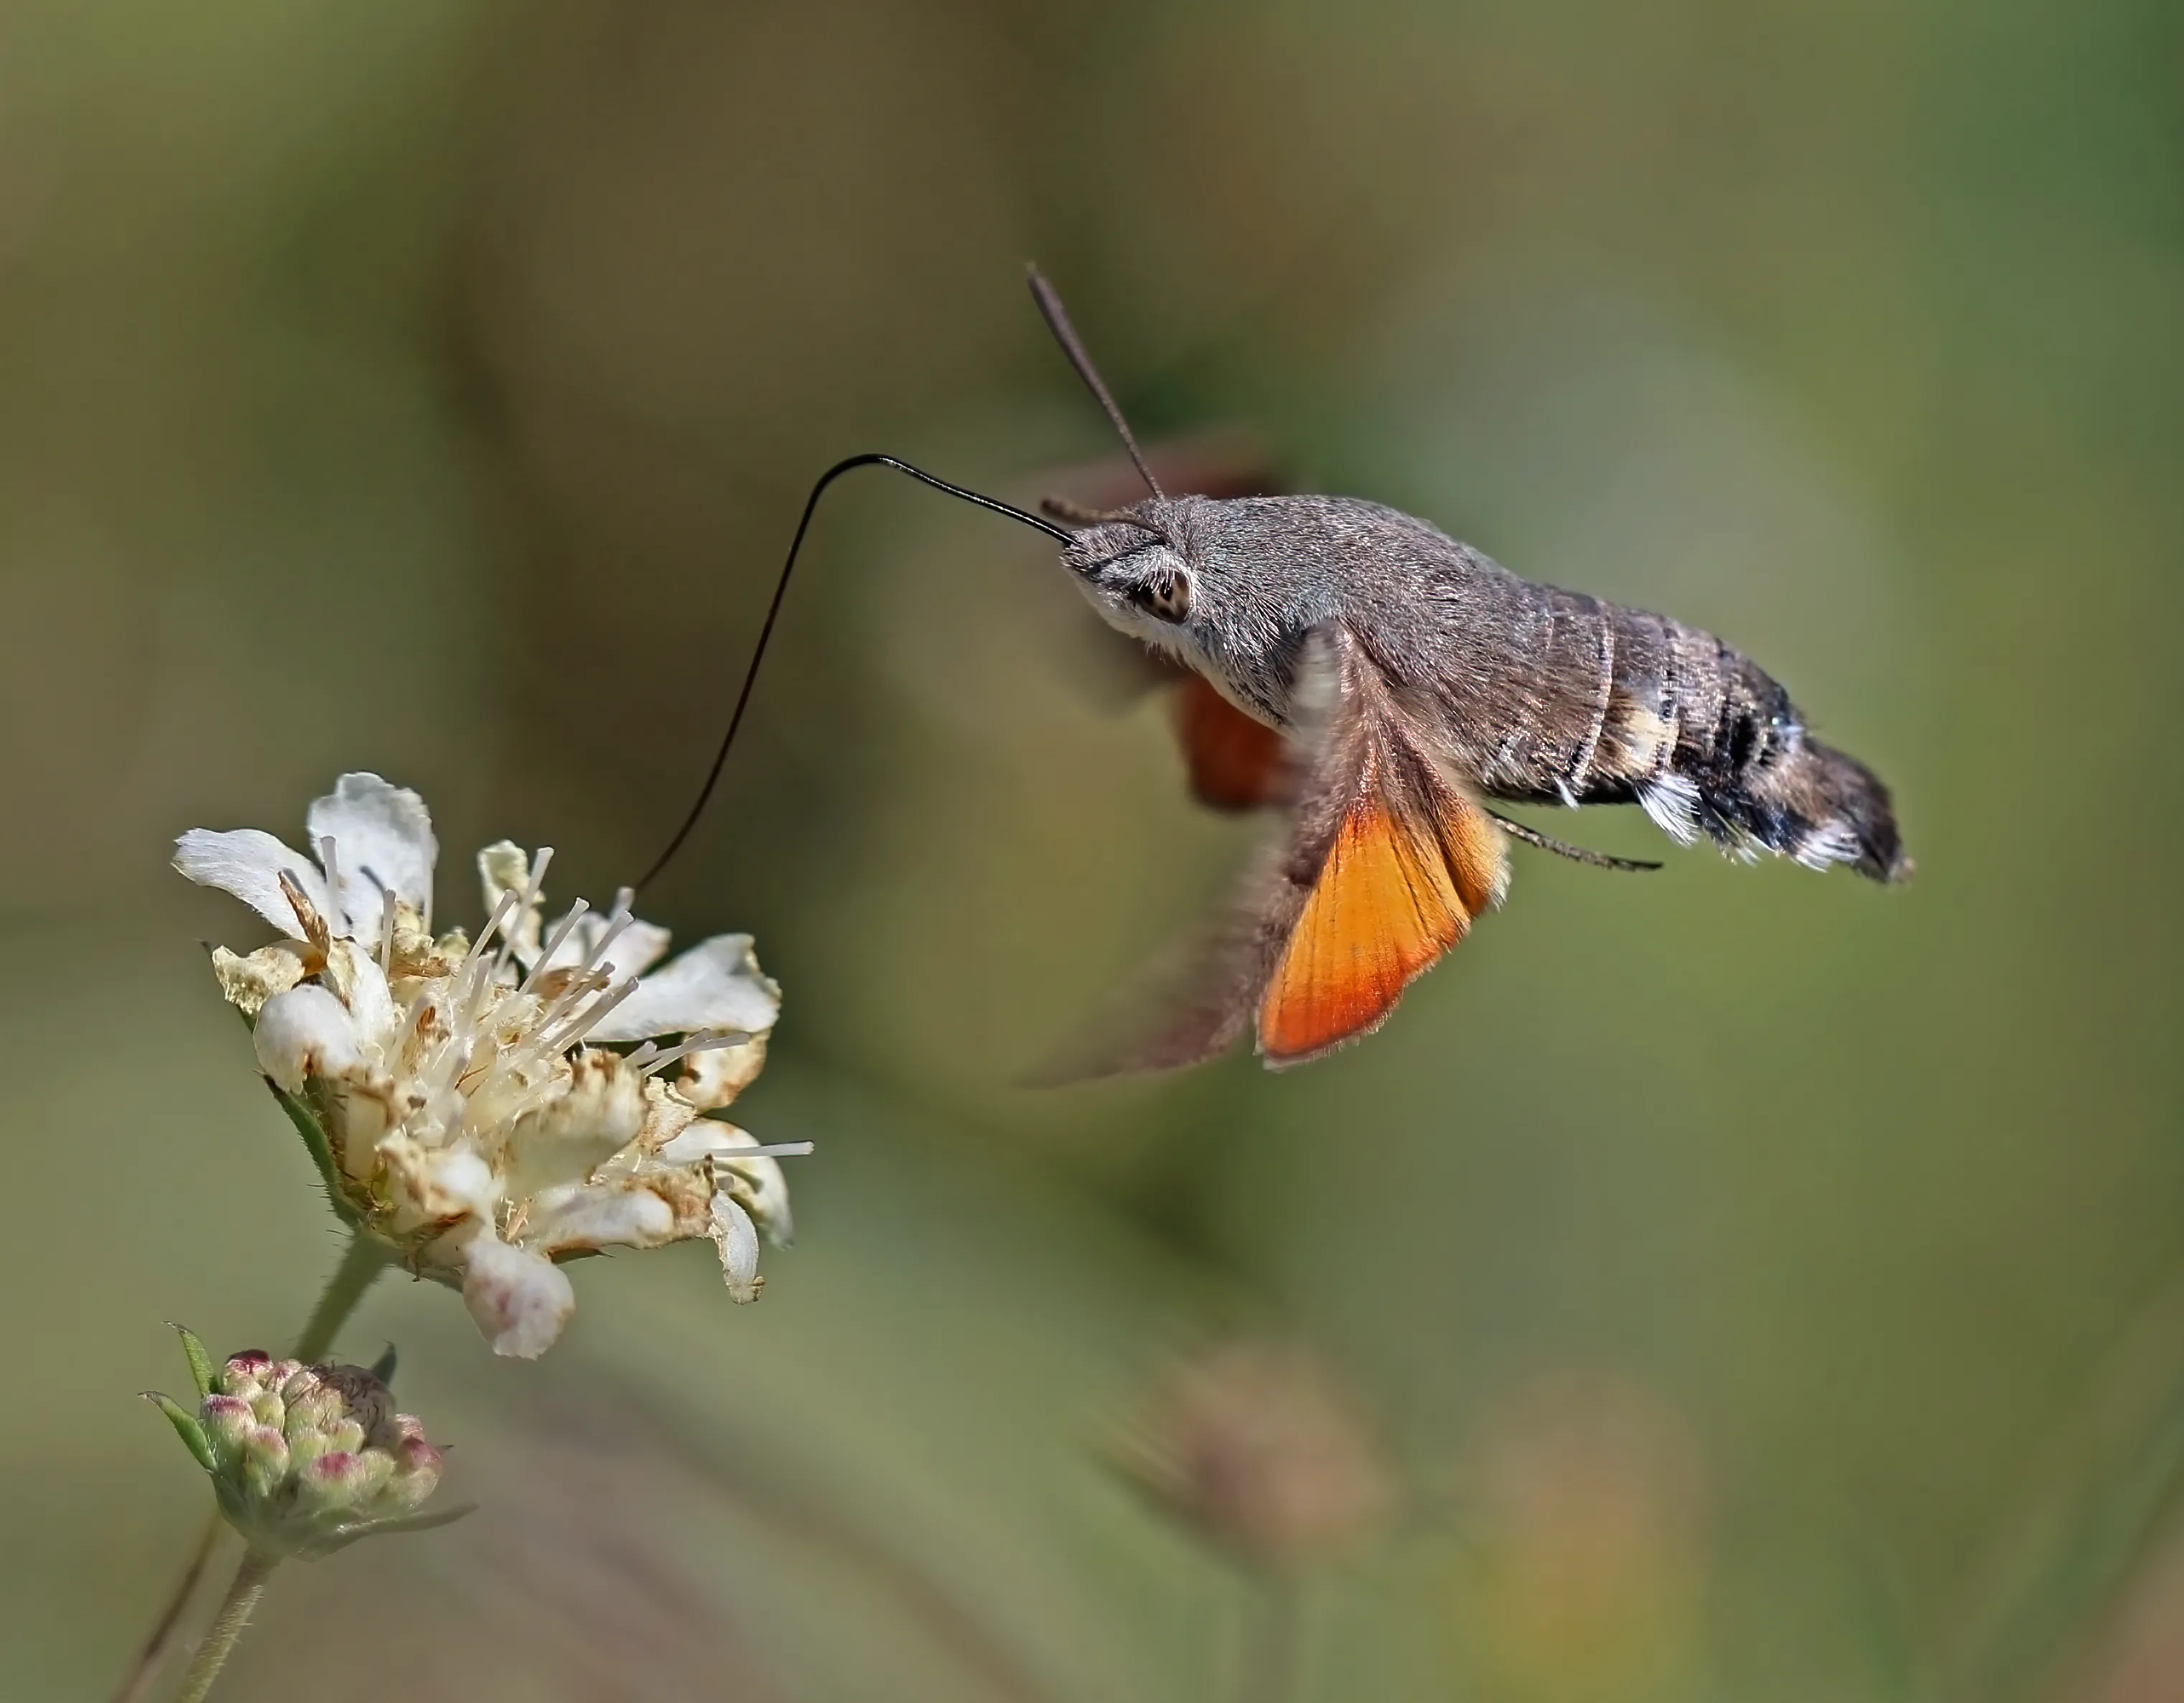 Это очаровательное существо похоже на колибри, но на самом деле это бабочка